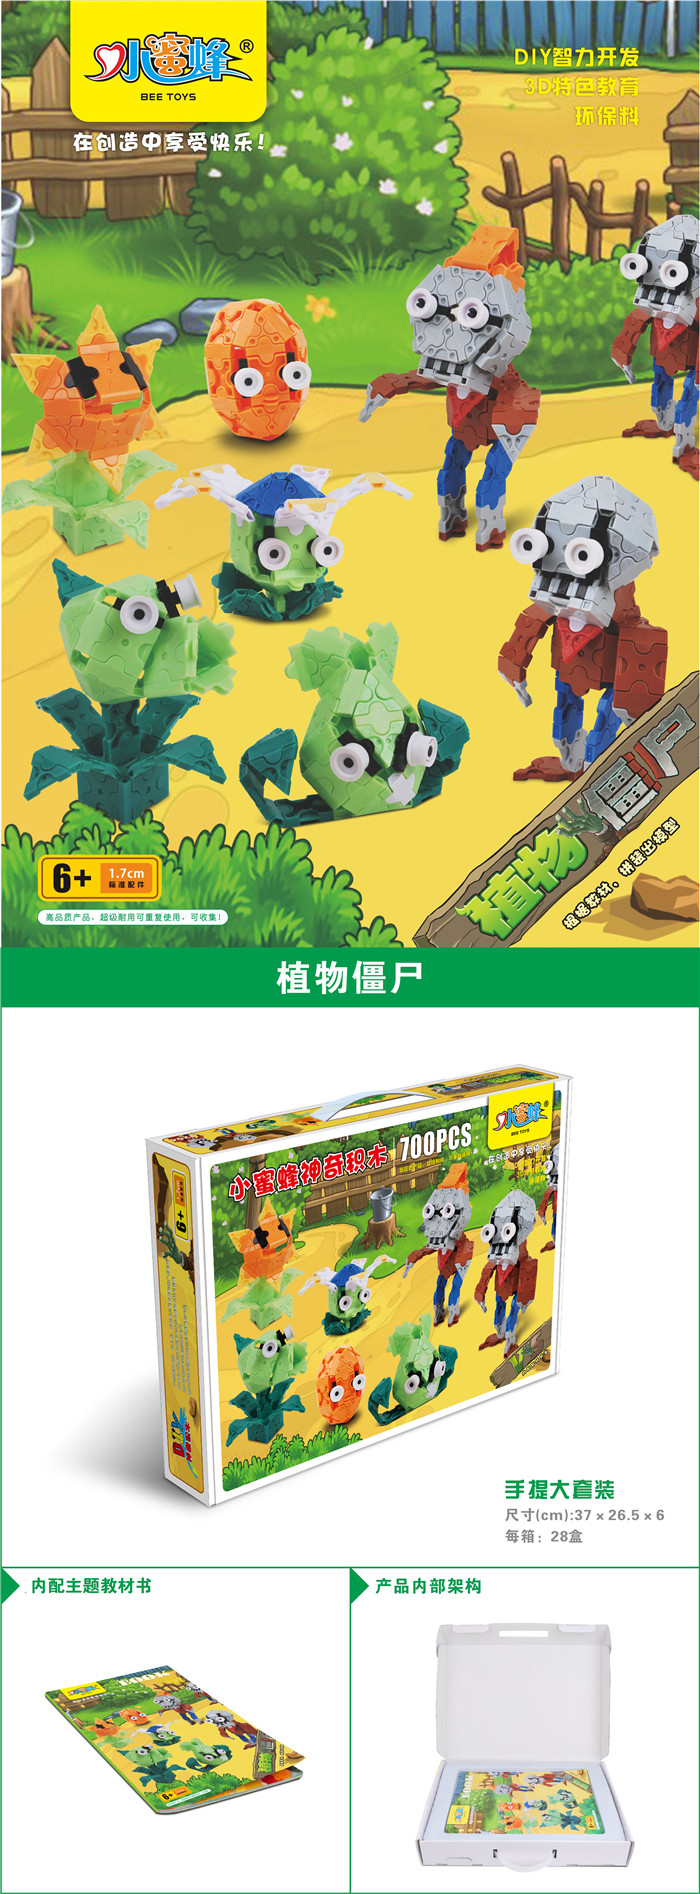 小蜜蜂神奇3D积木拼插植物大战僵尸 益智玩具 玩具礼品 早教科教8